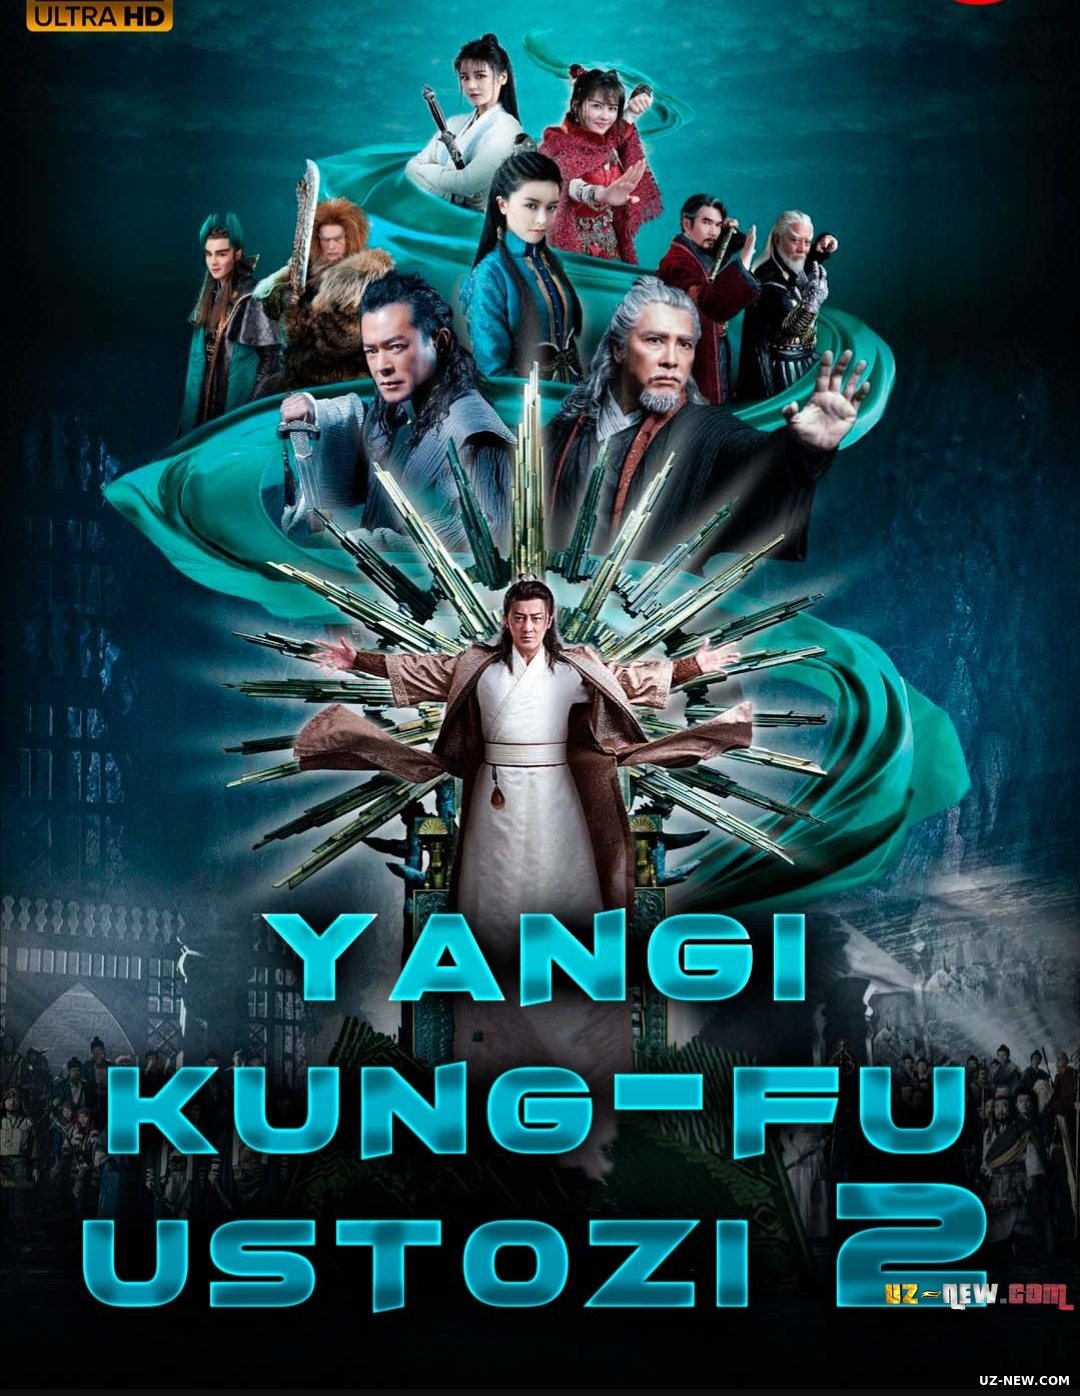 Yangi kung-fu ustozi 2 / Yangi kung-fu ustasi 2 Xitoy filmi Uzbek tilida O'zbekcha 2022